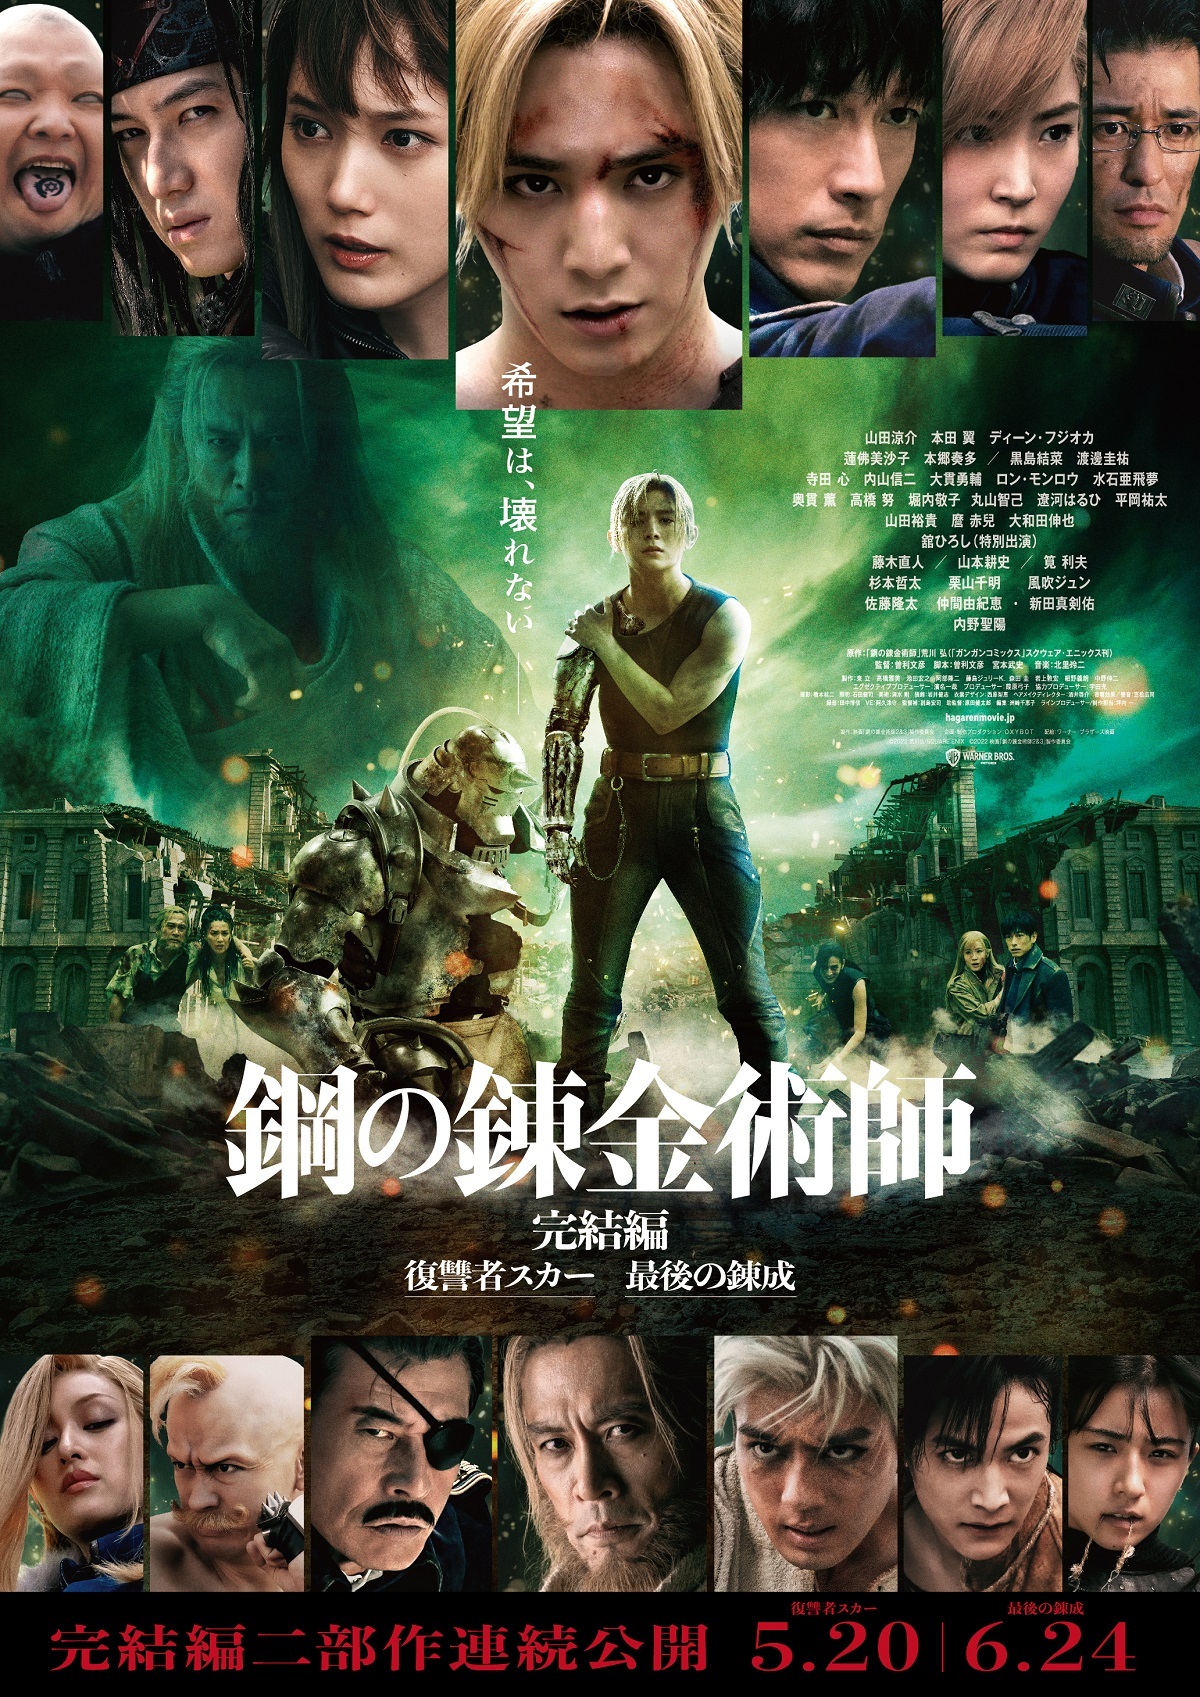 《钢之炼金术师》实人影戏新预告海报 5月20日上映